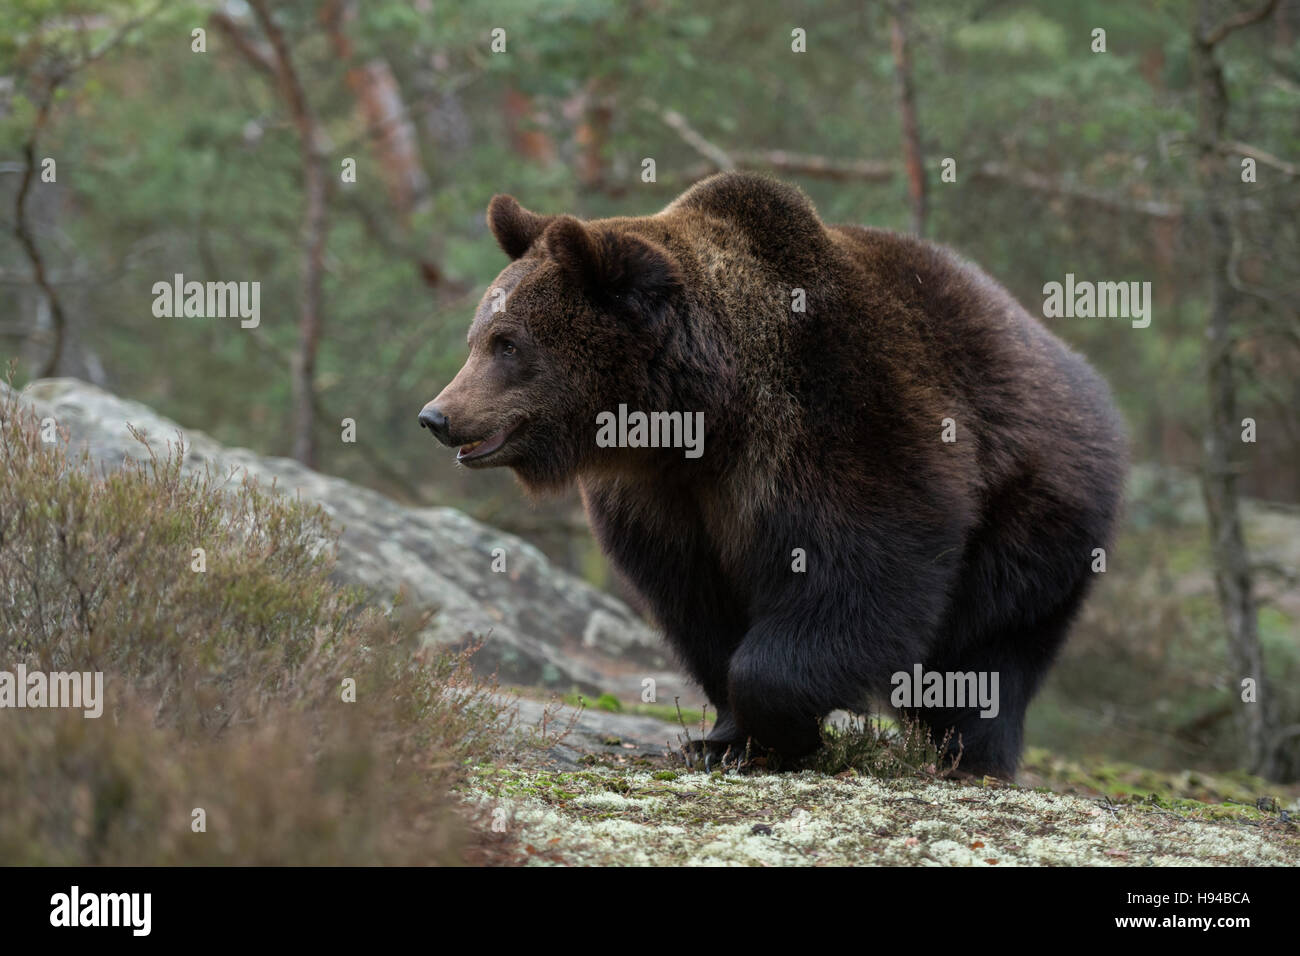 Unione orso bruno / Braunbaer ( Ursus arctos ) camminando su di una radura nel bosco, animale forte, tipico che circonda. Foto Stock